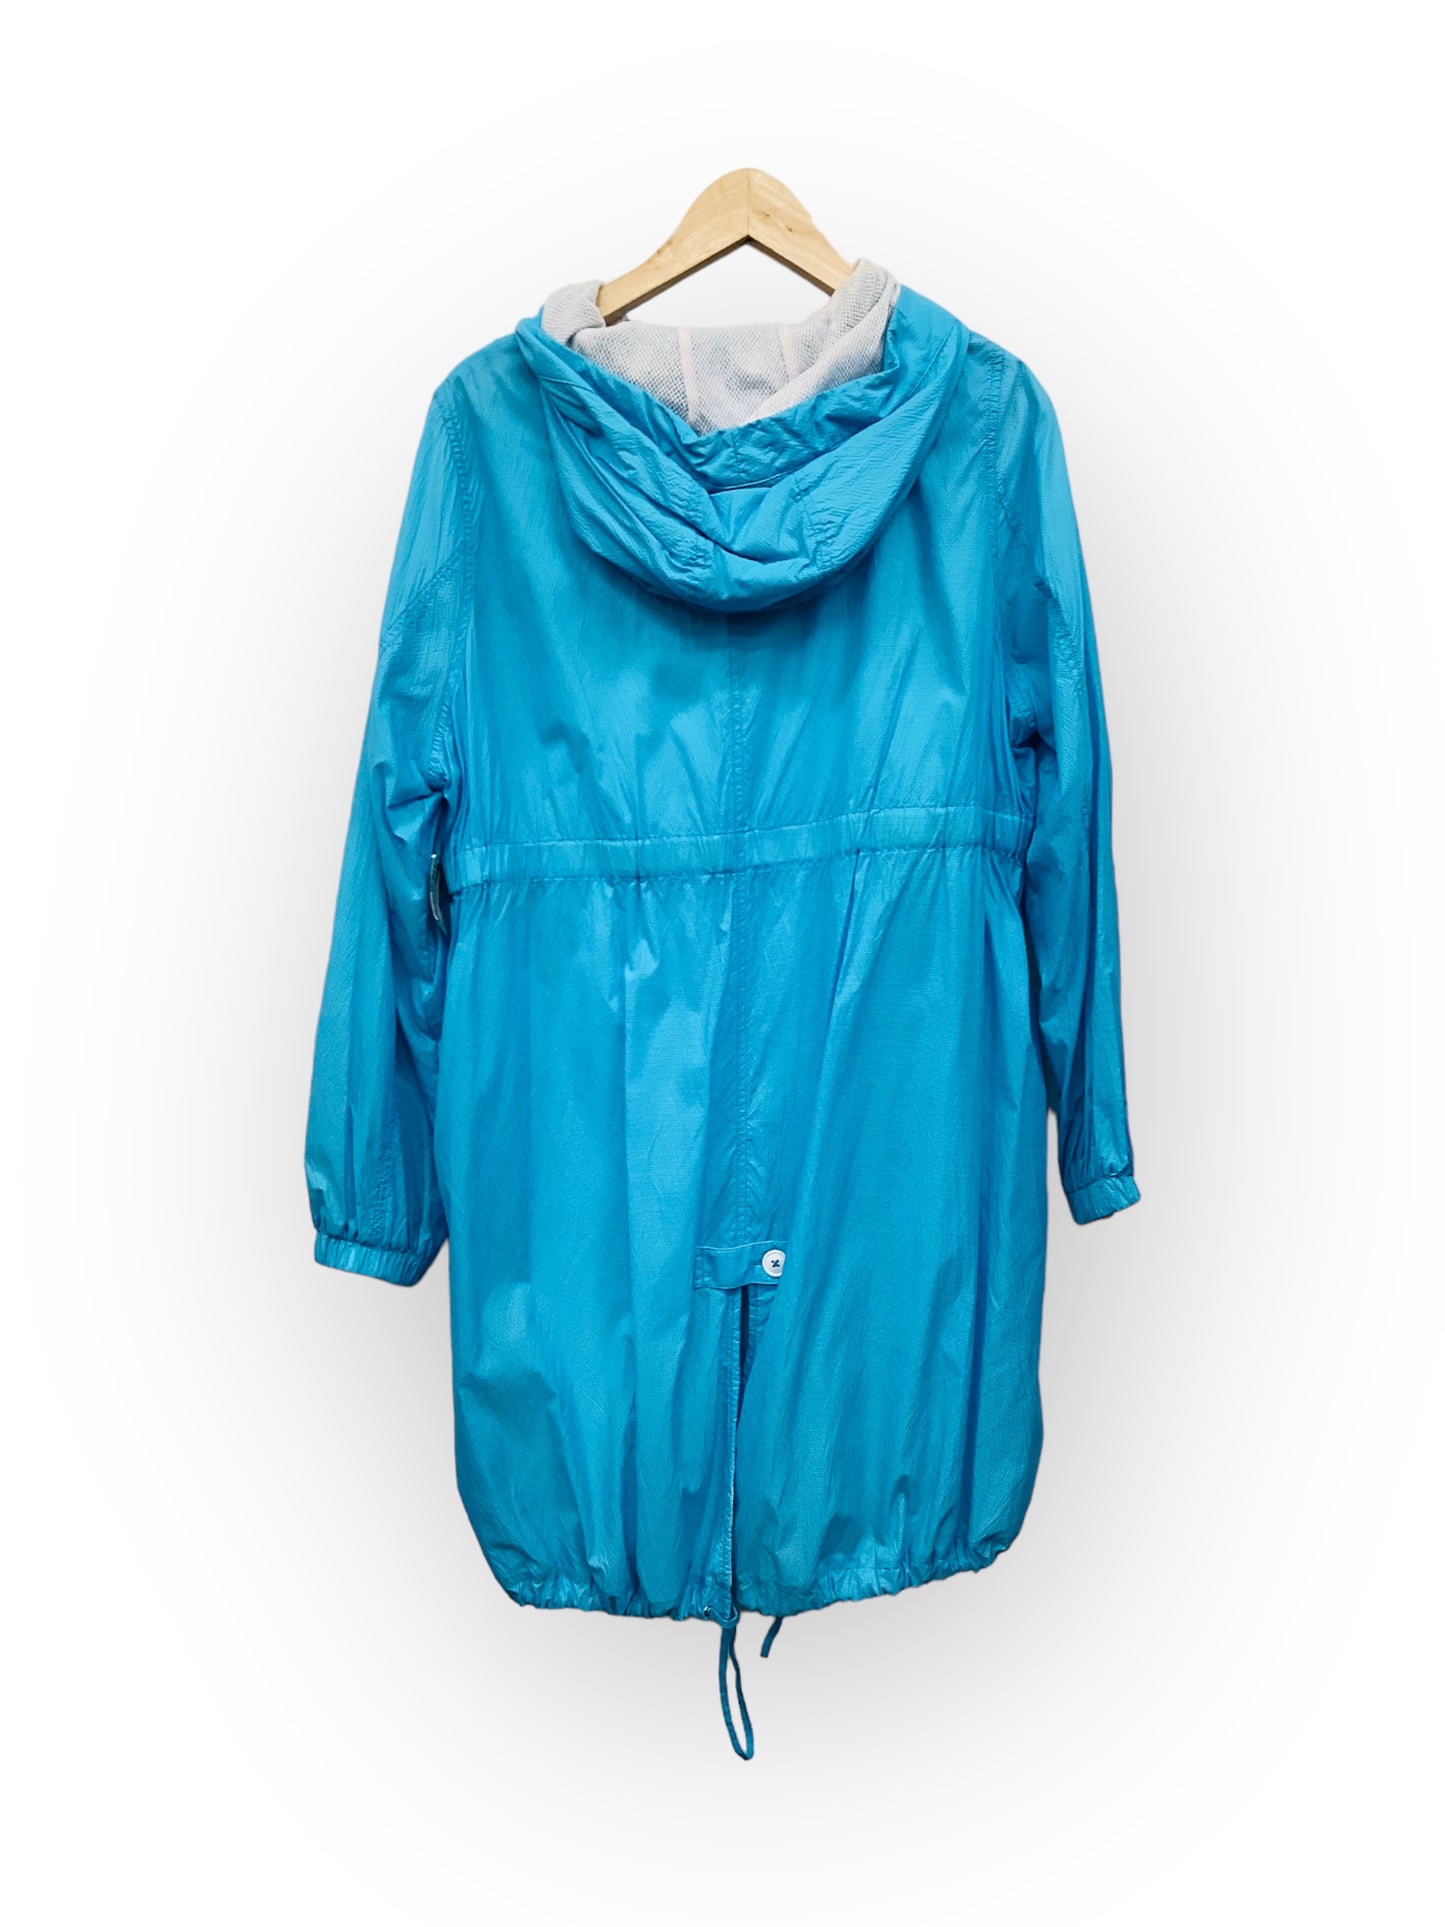 Jacket Windbreaker By Blyse  Size: S